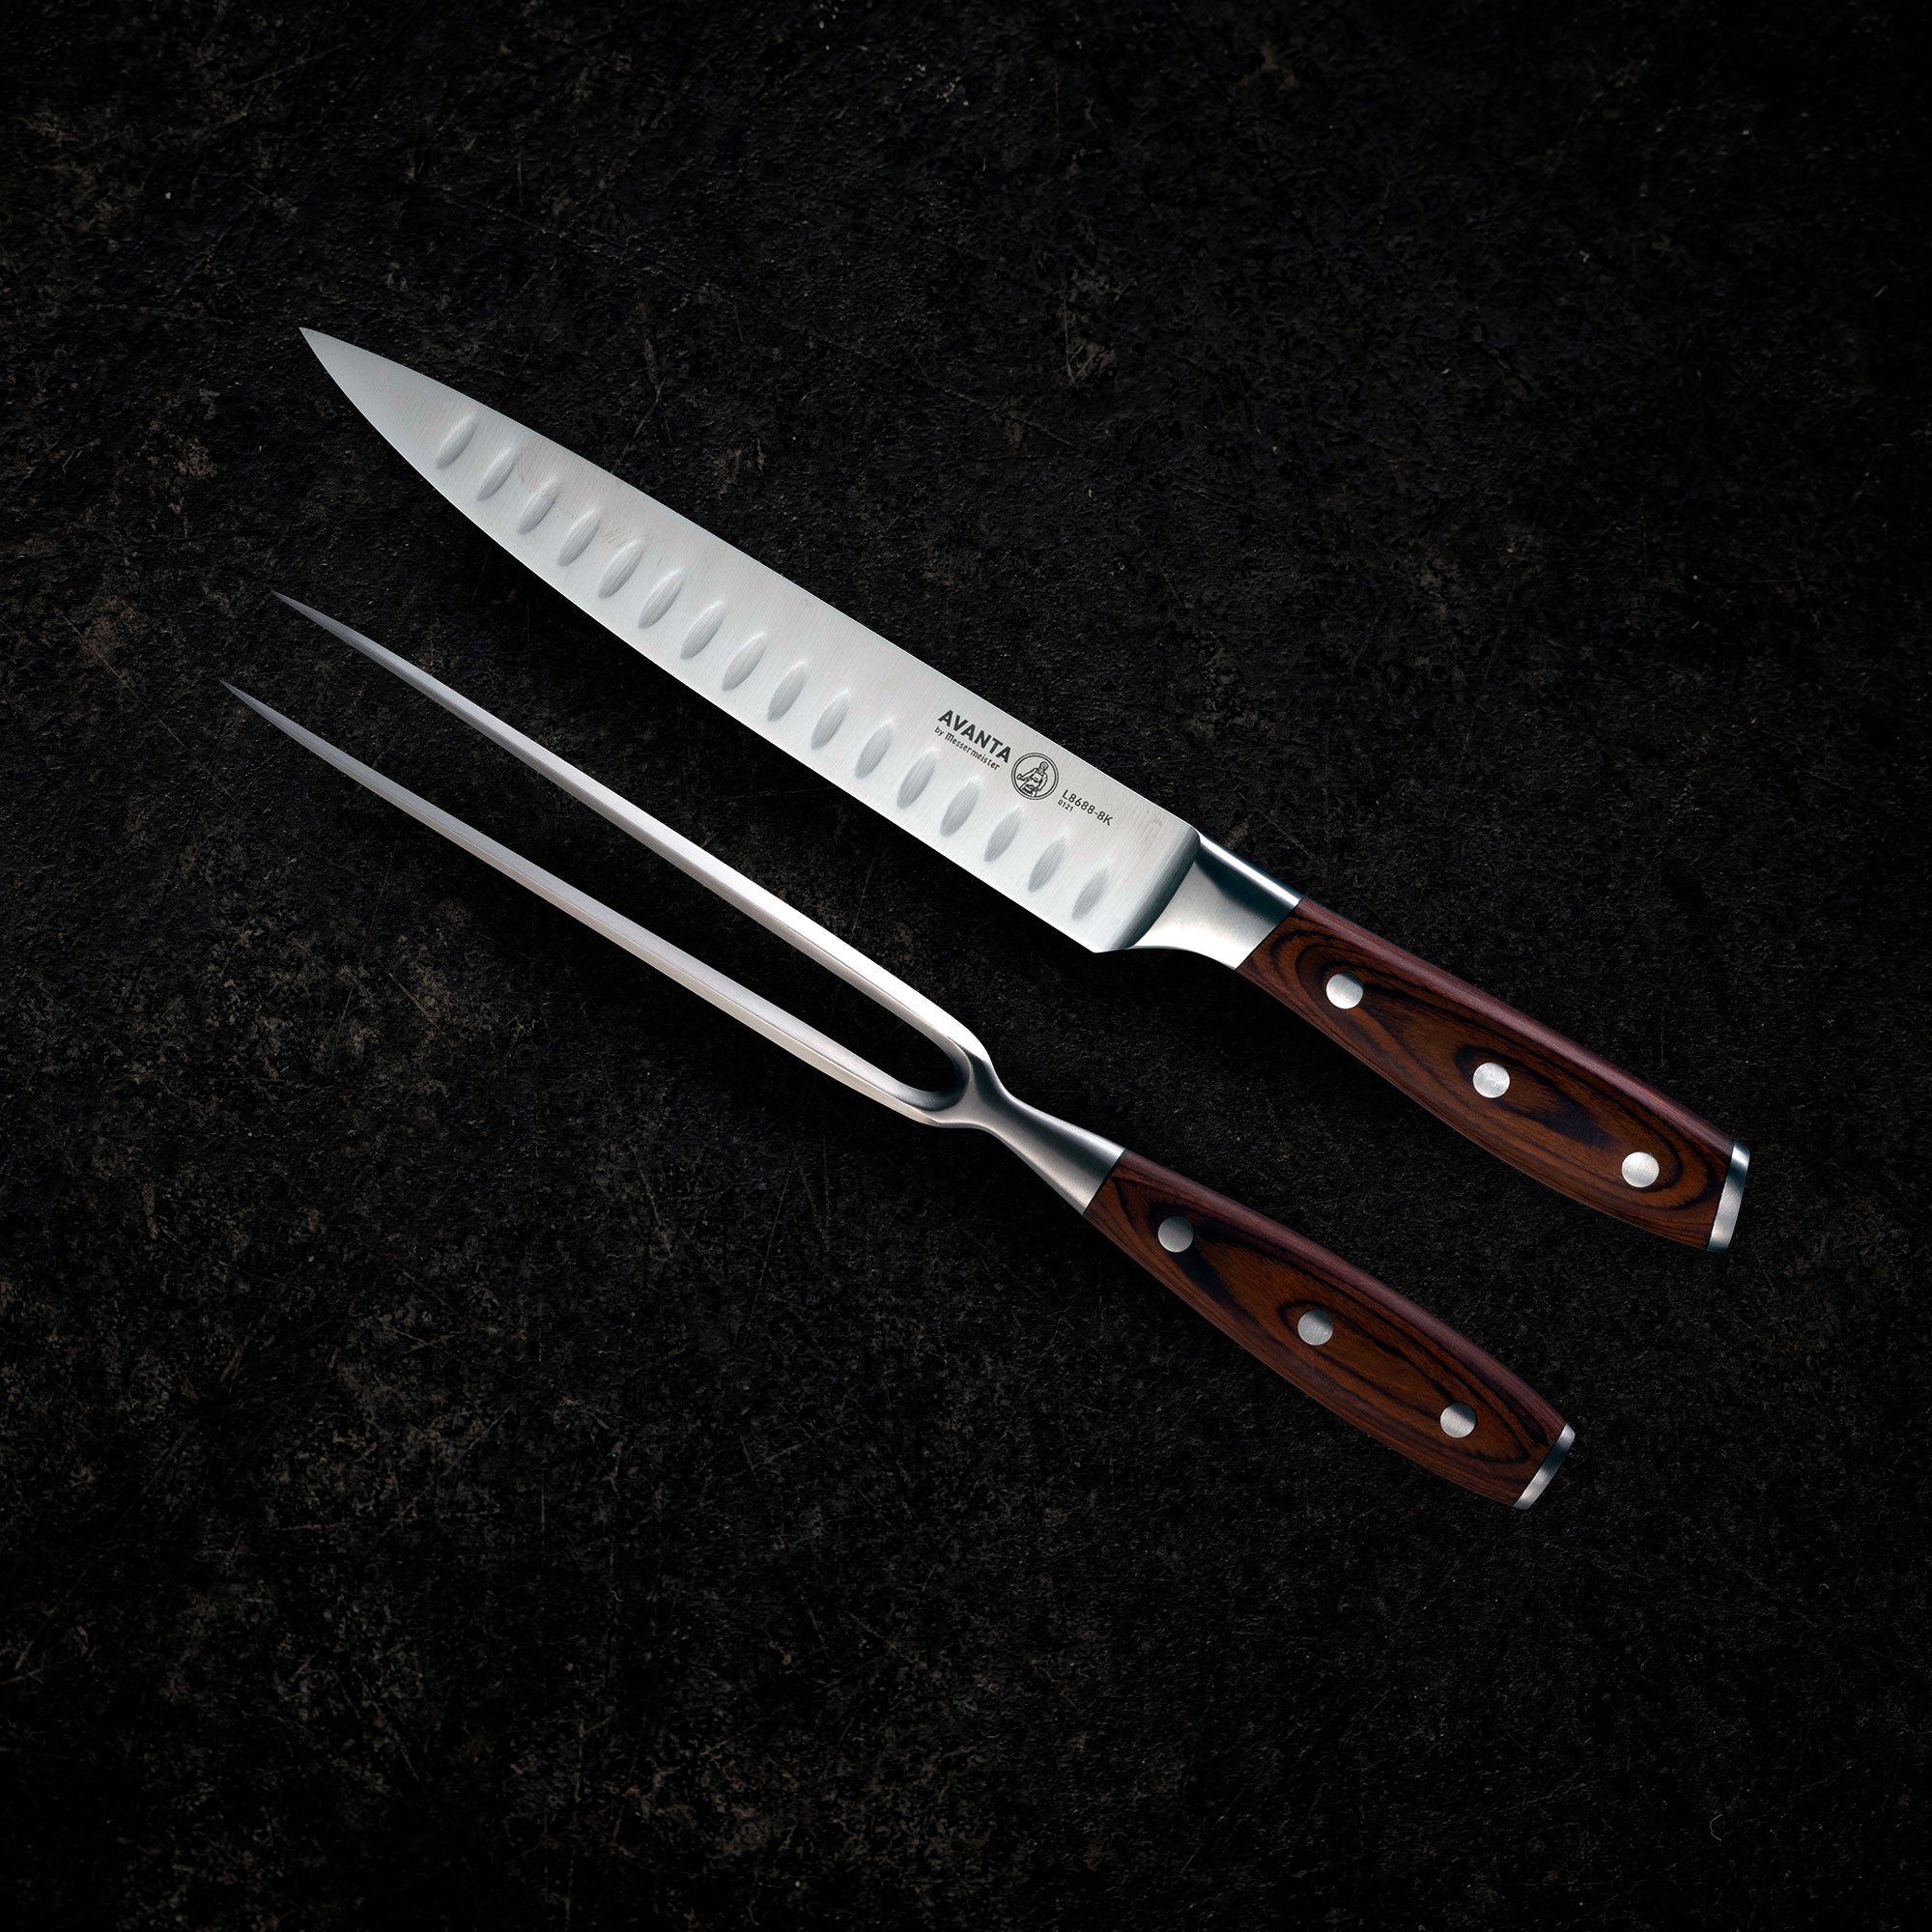 Forever Sharp Series Knives 12 pc